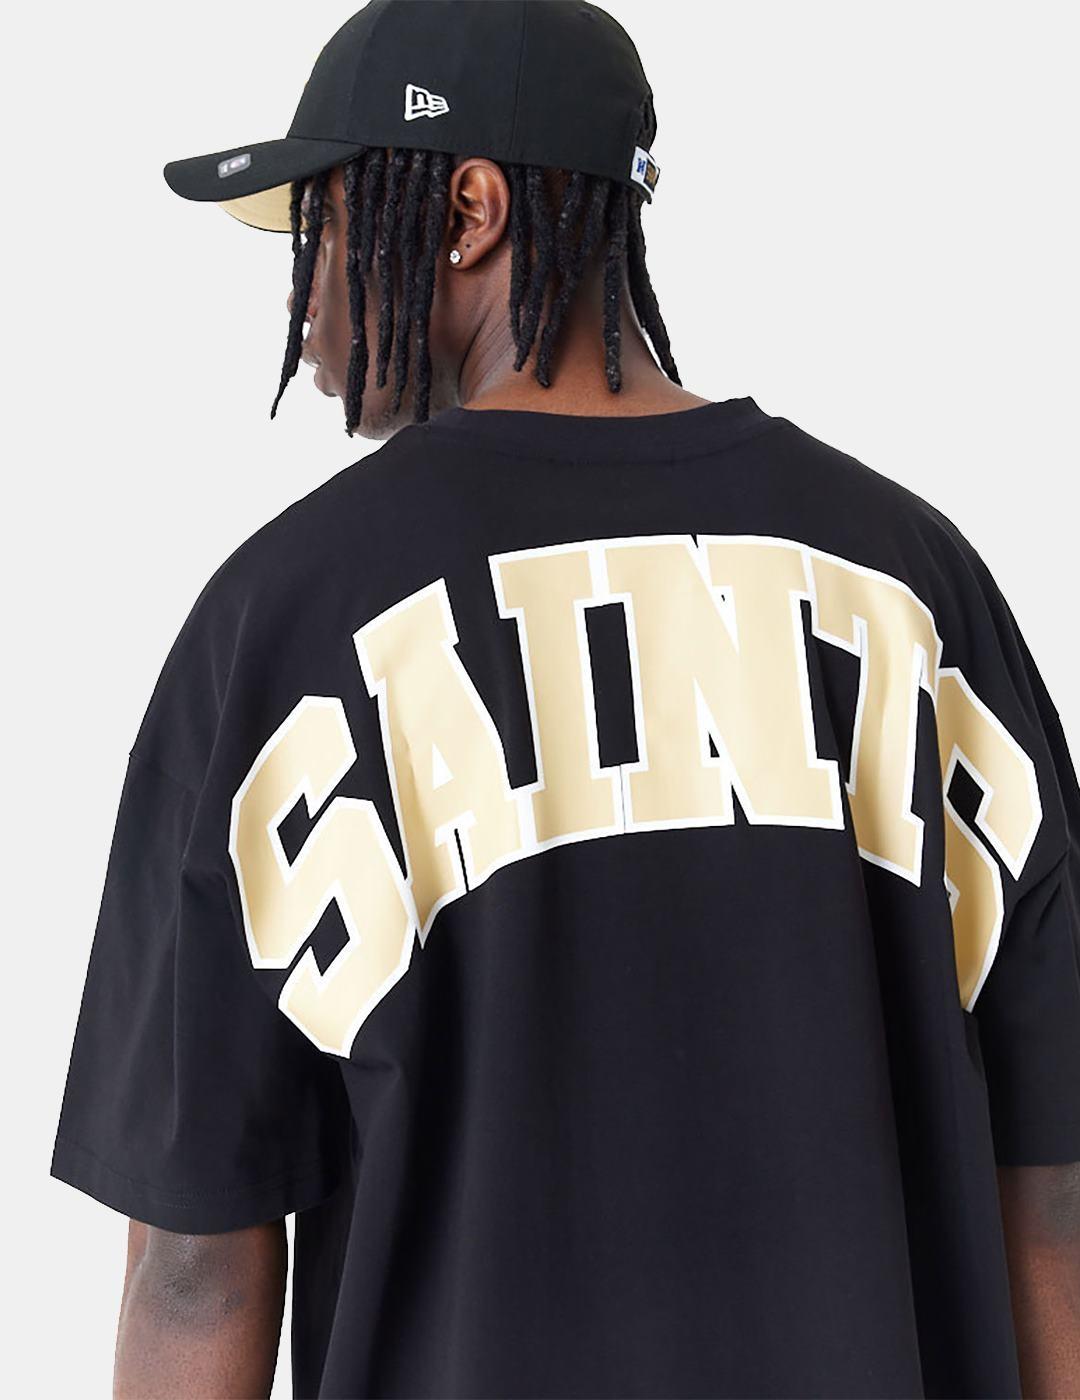 Camiseta New Era Nfl Drop Shoulder Saints